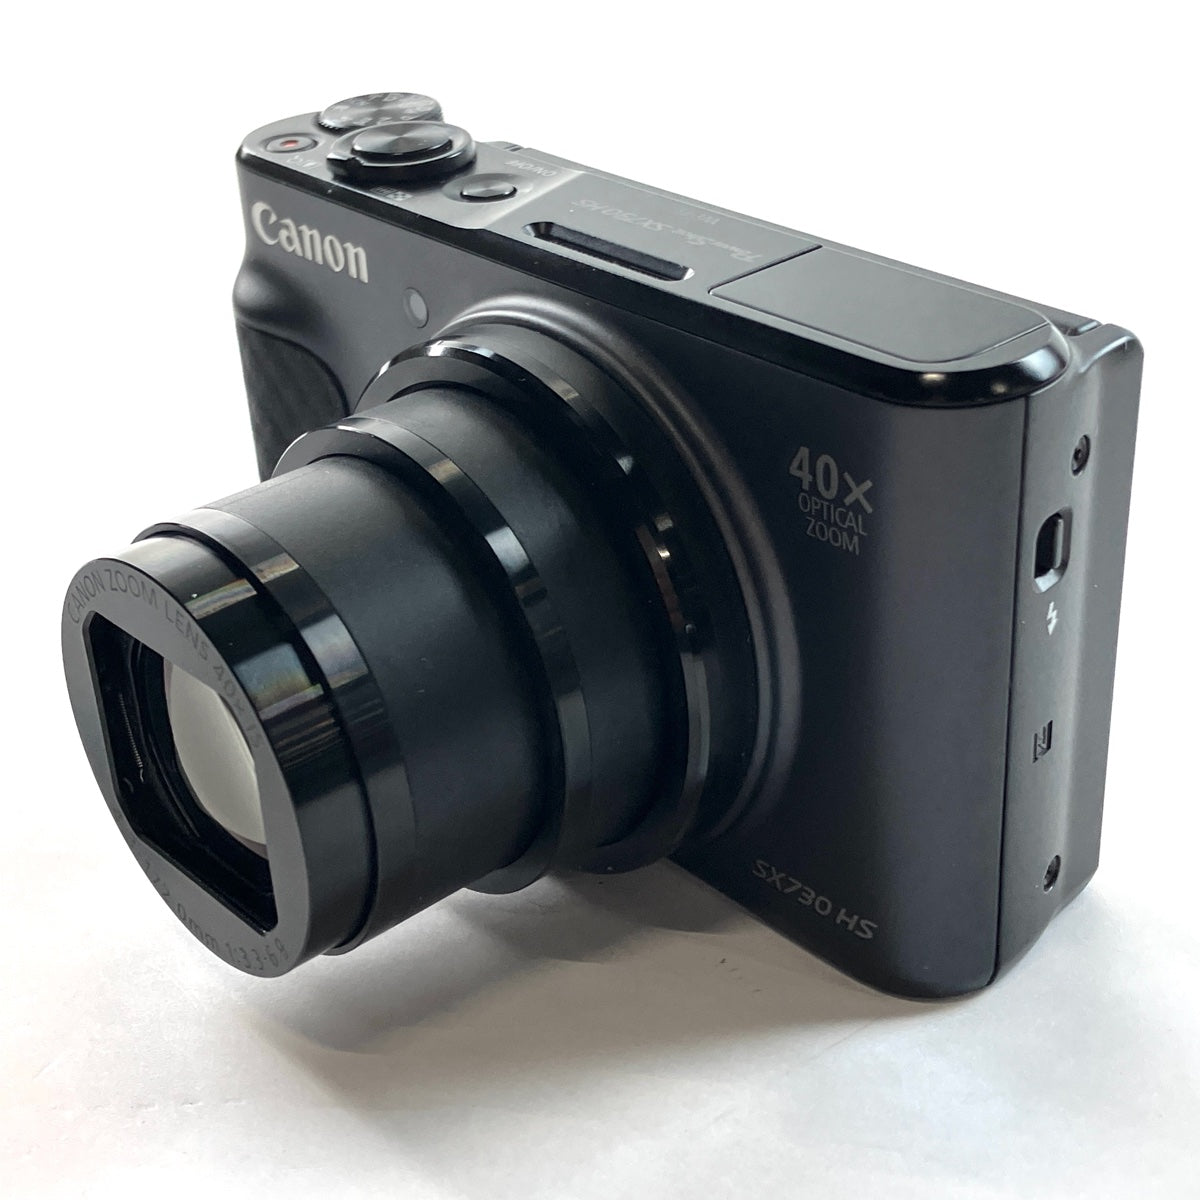 CANON PowerShot SX730 HS ブラック - コンパクトデジタルカメラ